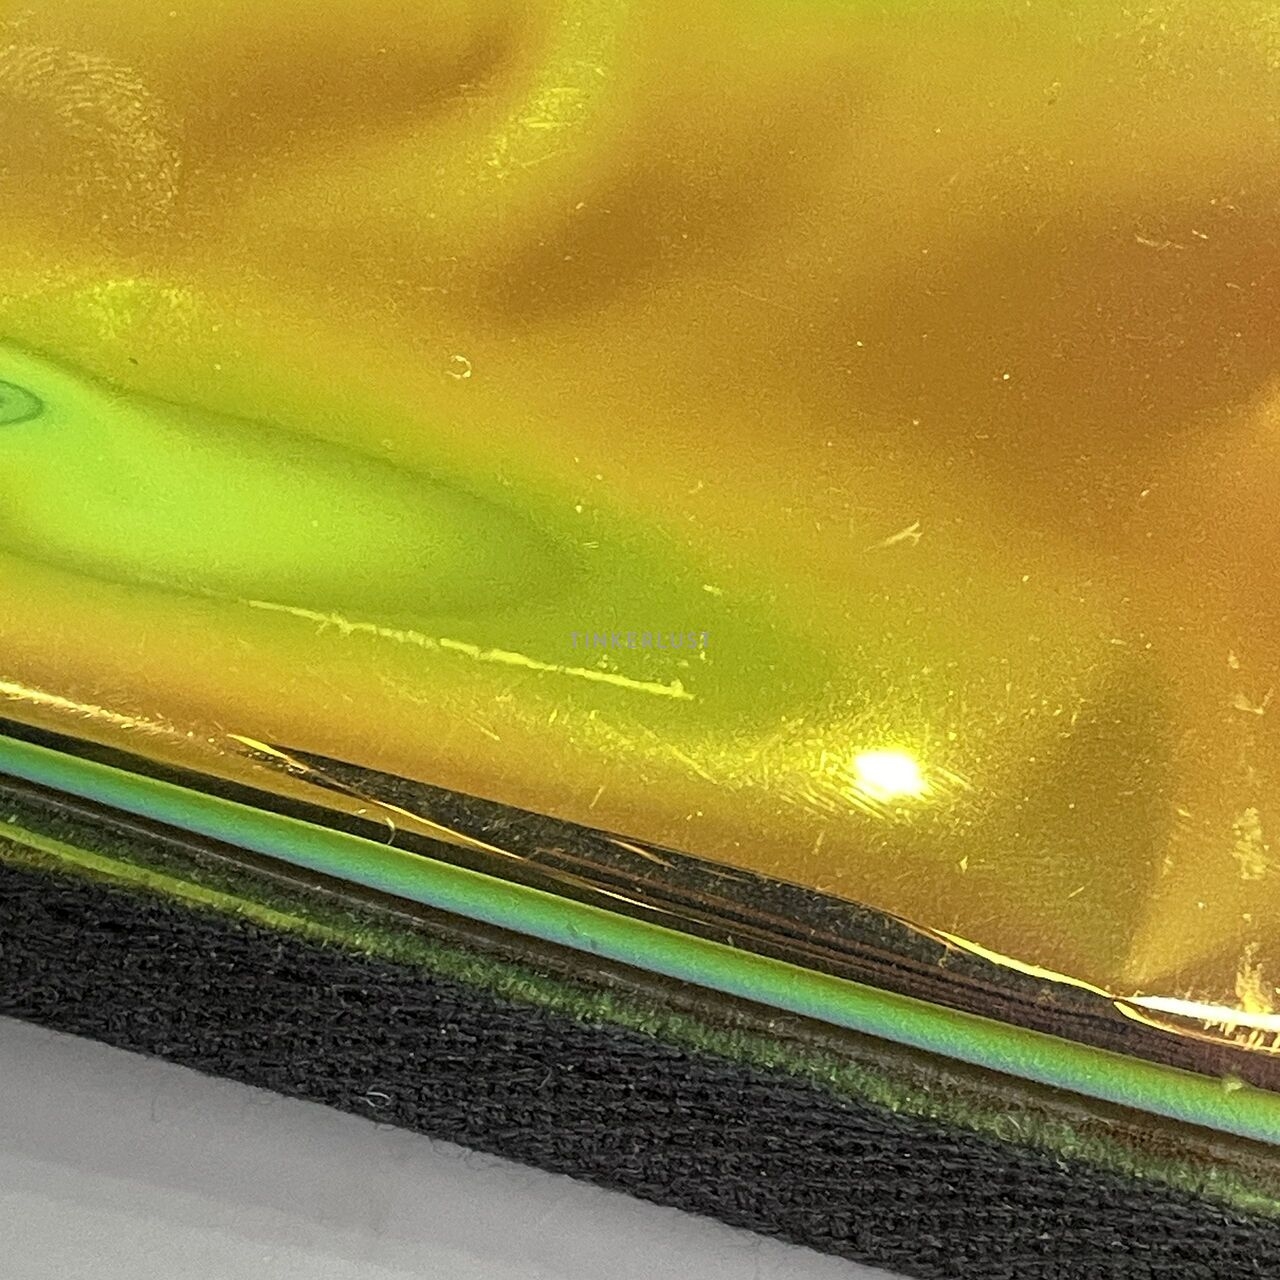 Steve Madden Gold Hologram Phone Holder Sling Bag